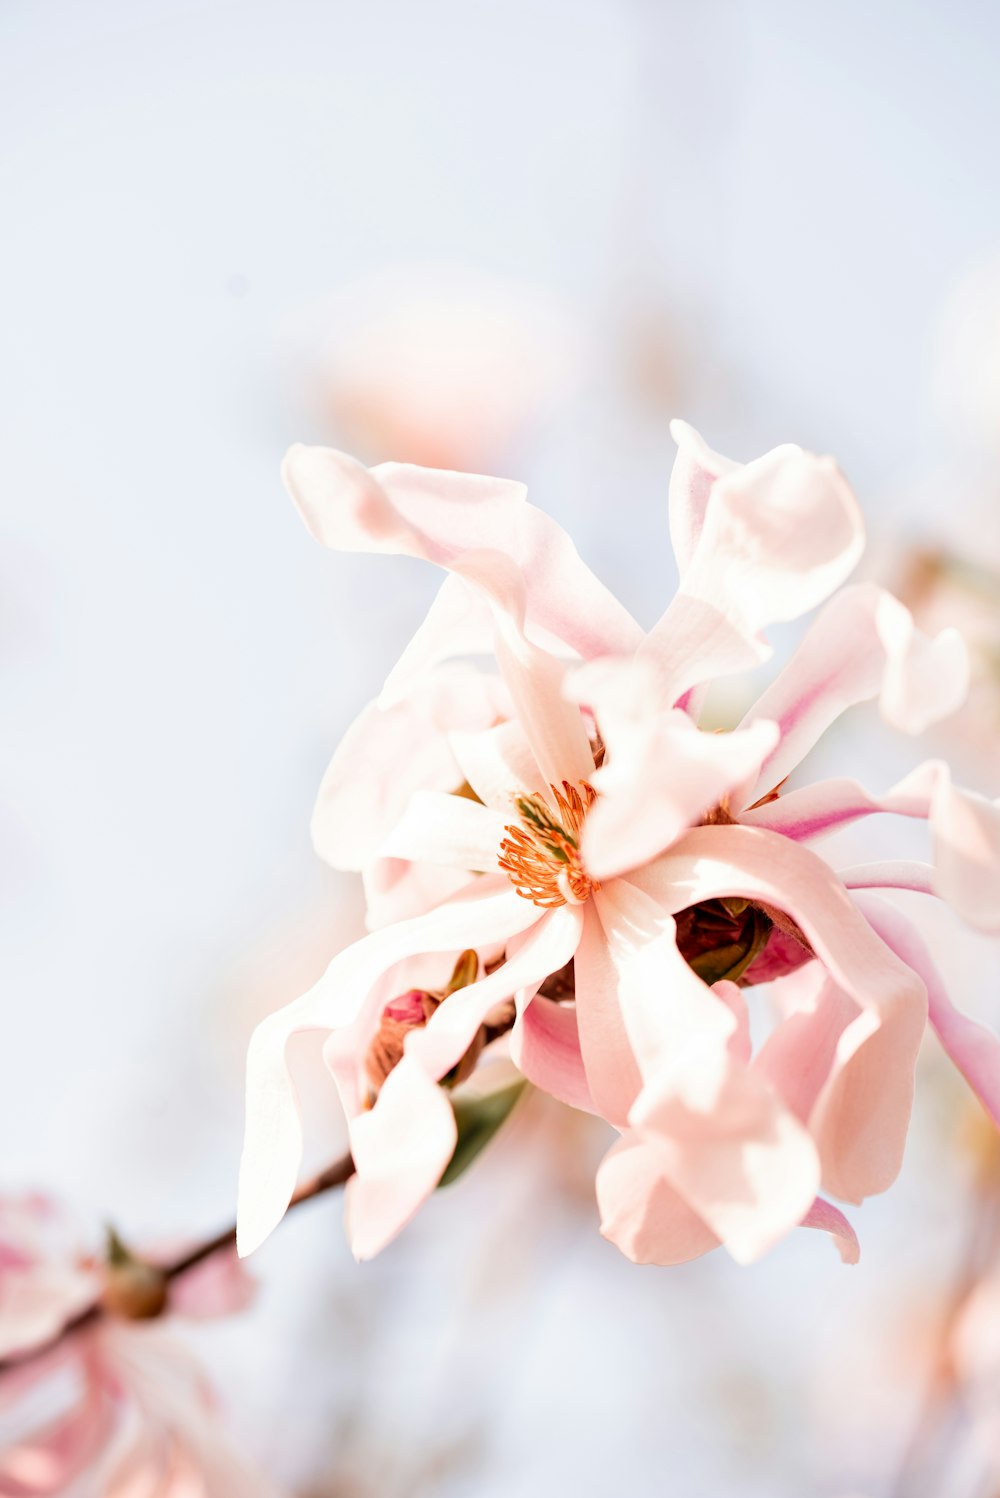 fleur blanche et rose en gros plan photo – Photo Fleur Gratuite sur Unsplash